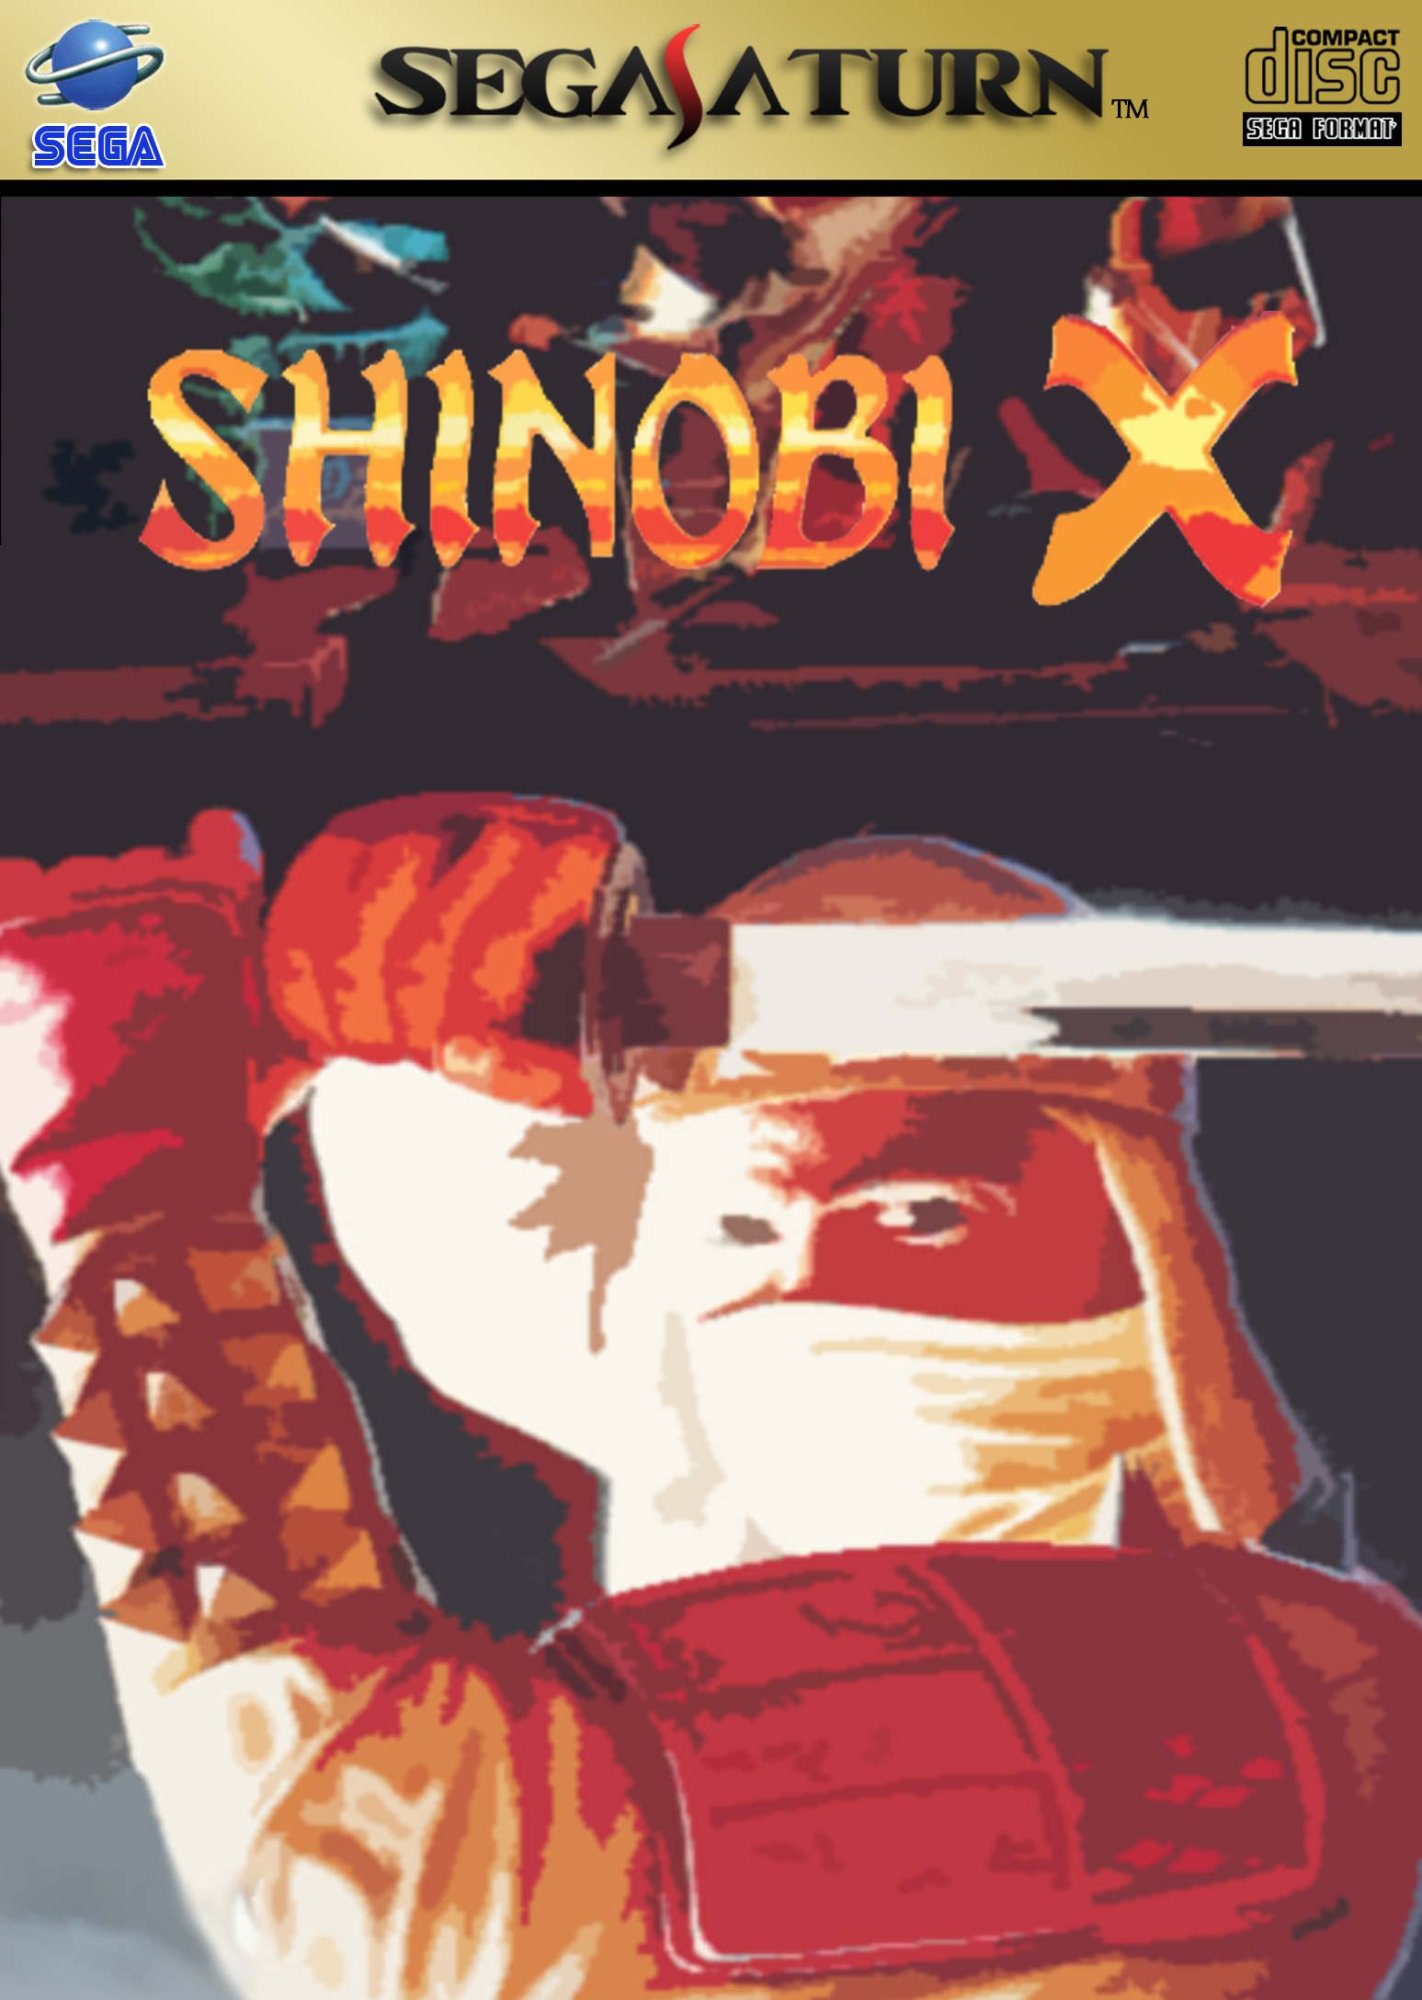 Shinobi X (60 Hz Hack)